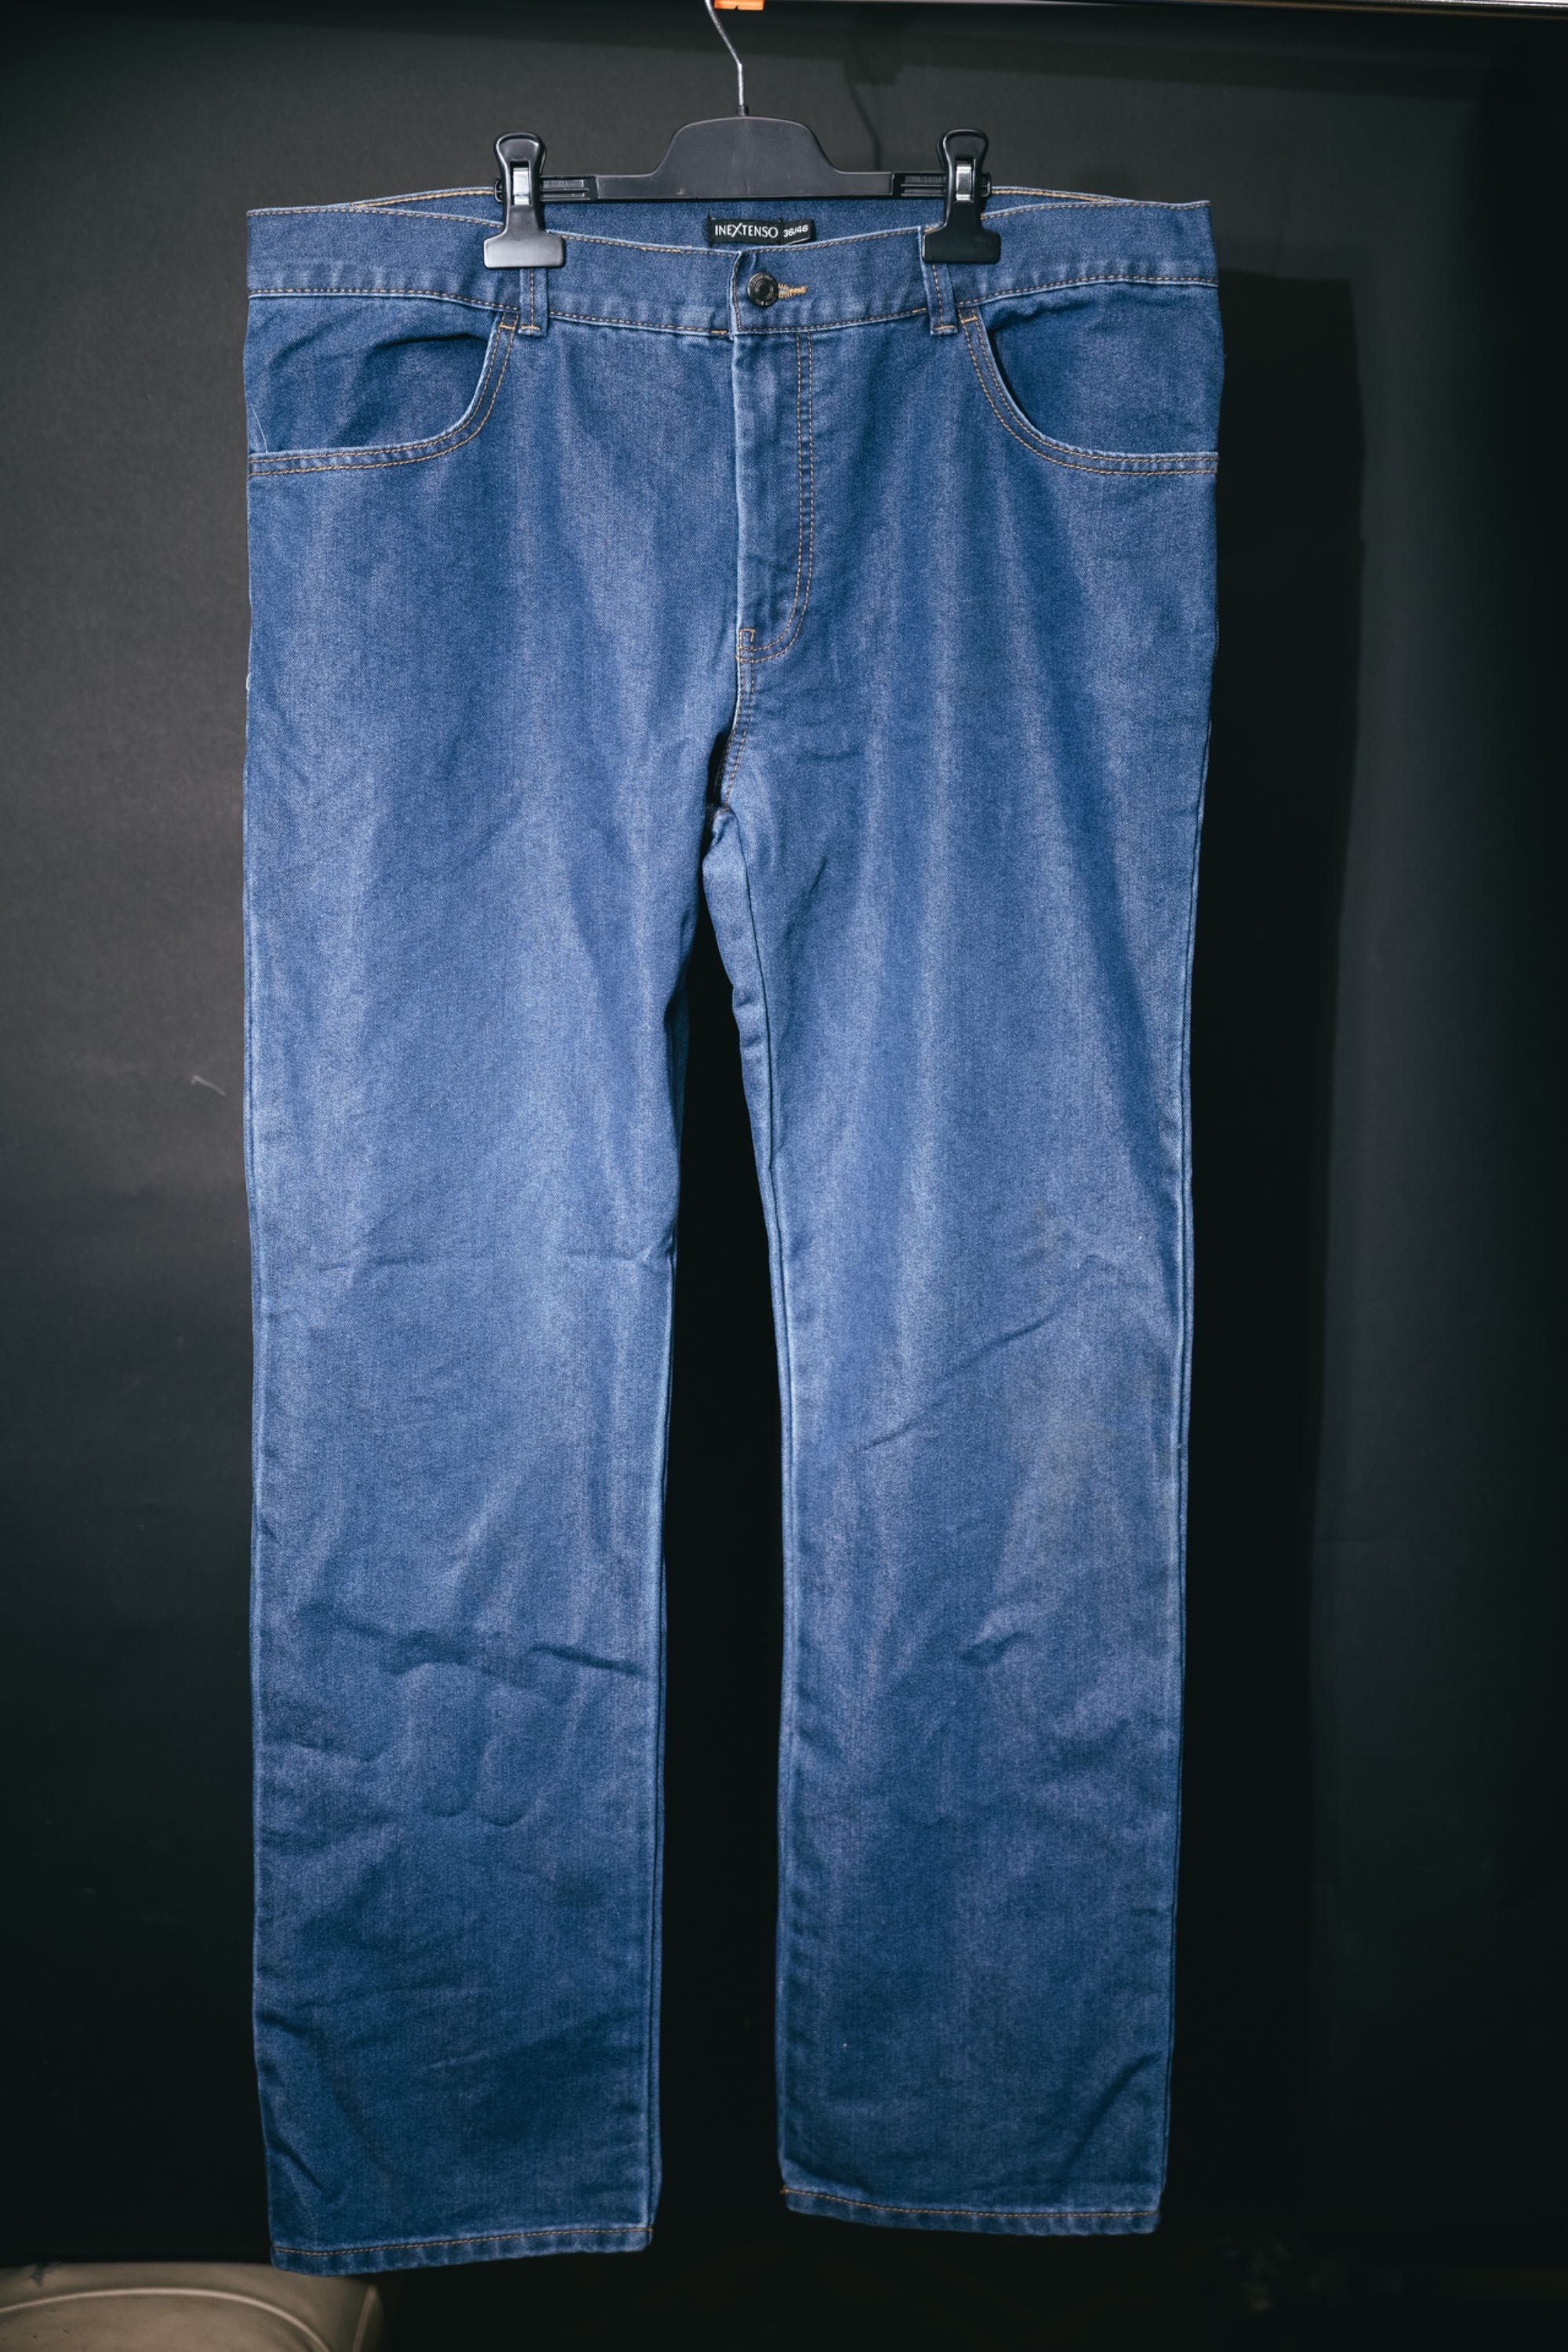 Spodnie męskie jeansowe Inextenso rozmiar 36/46 stan bardzo dobry